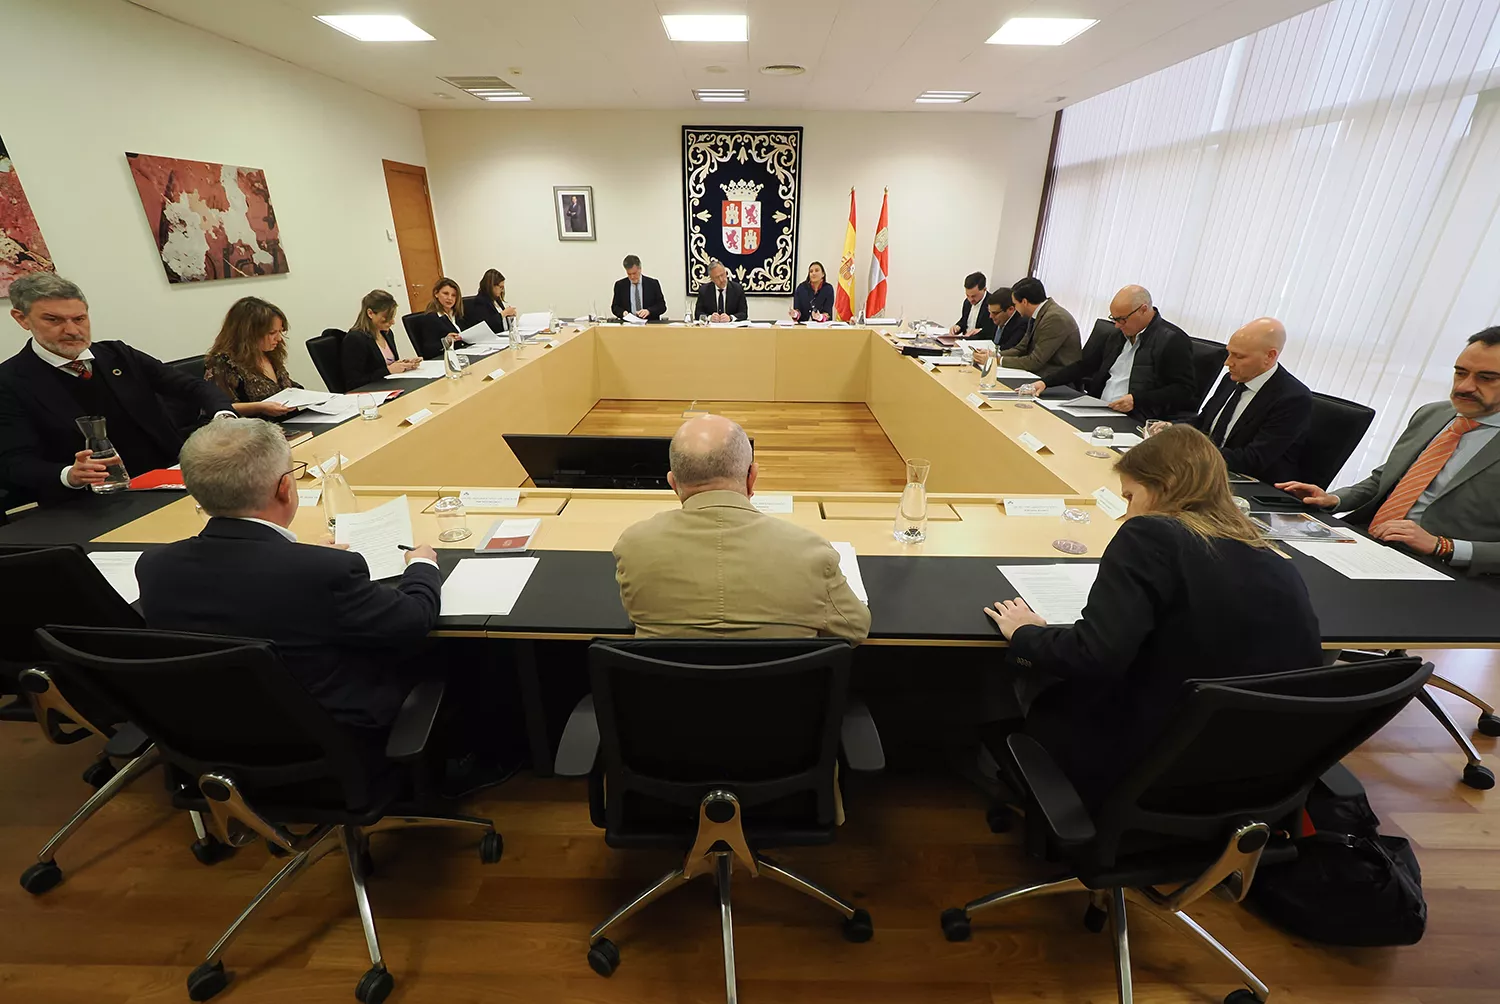 Castilla y León no hará declaración institucional contra el asesinato de los guardias civiles en Barbate, uno de ellos de origen leonés, por la falta de consenso